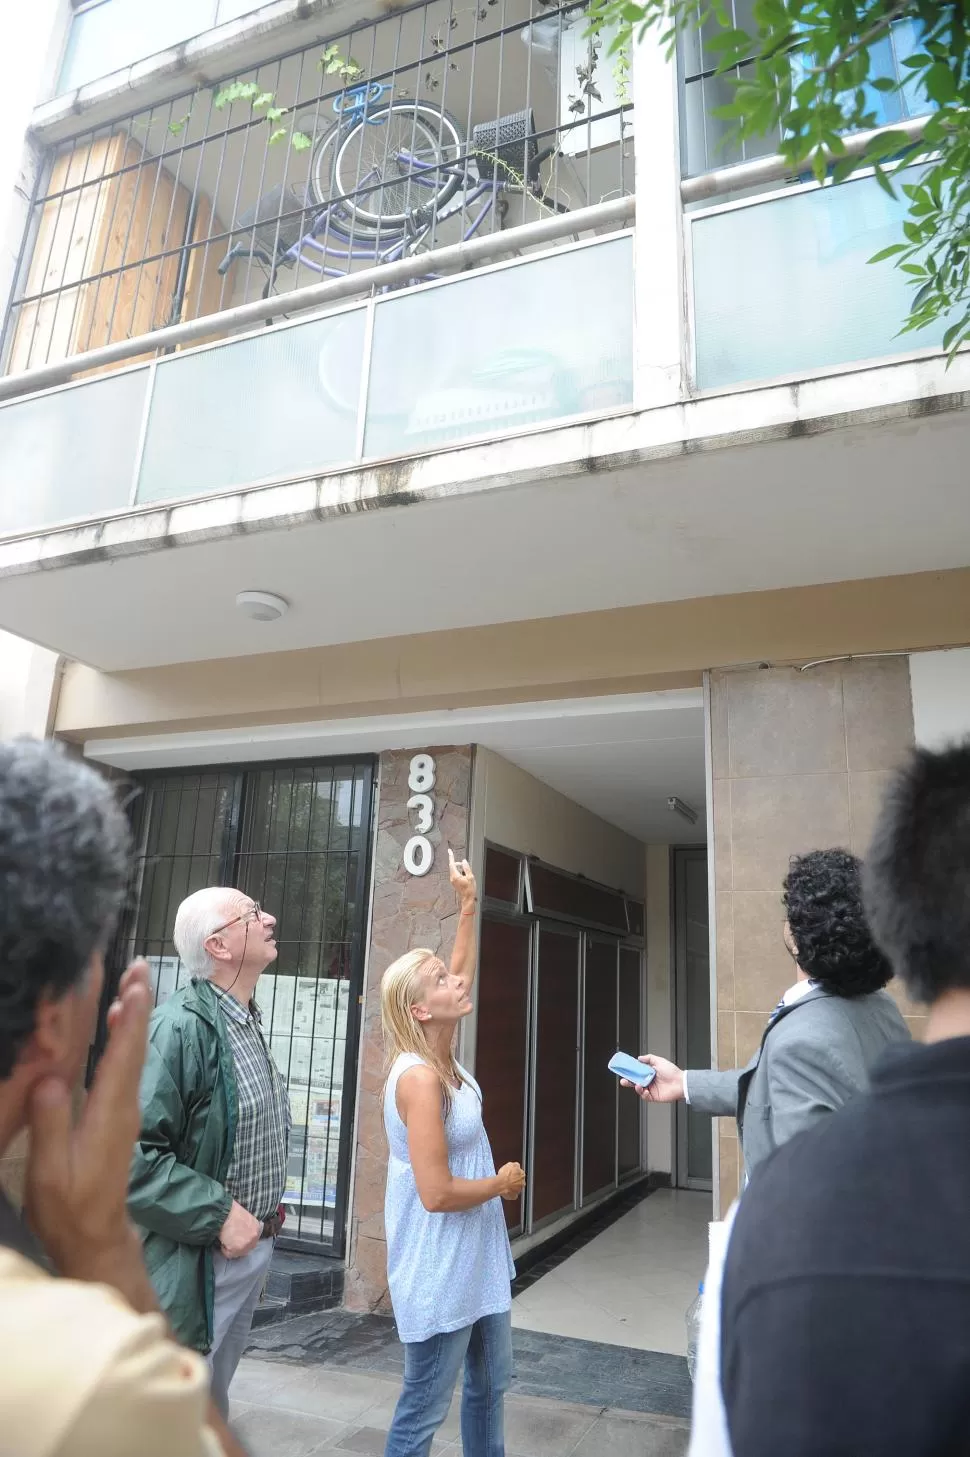 ASUSTADOS. Los vecinos del edificio señalan el balcón en donde Soria tuvo una feroz pelea con el asaltante. la gaceta / foto de hector peralta 